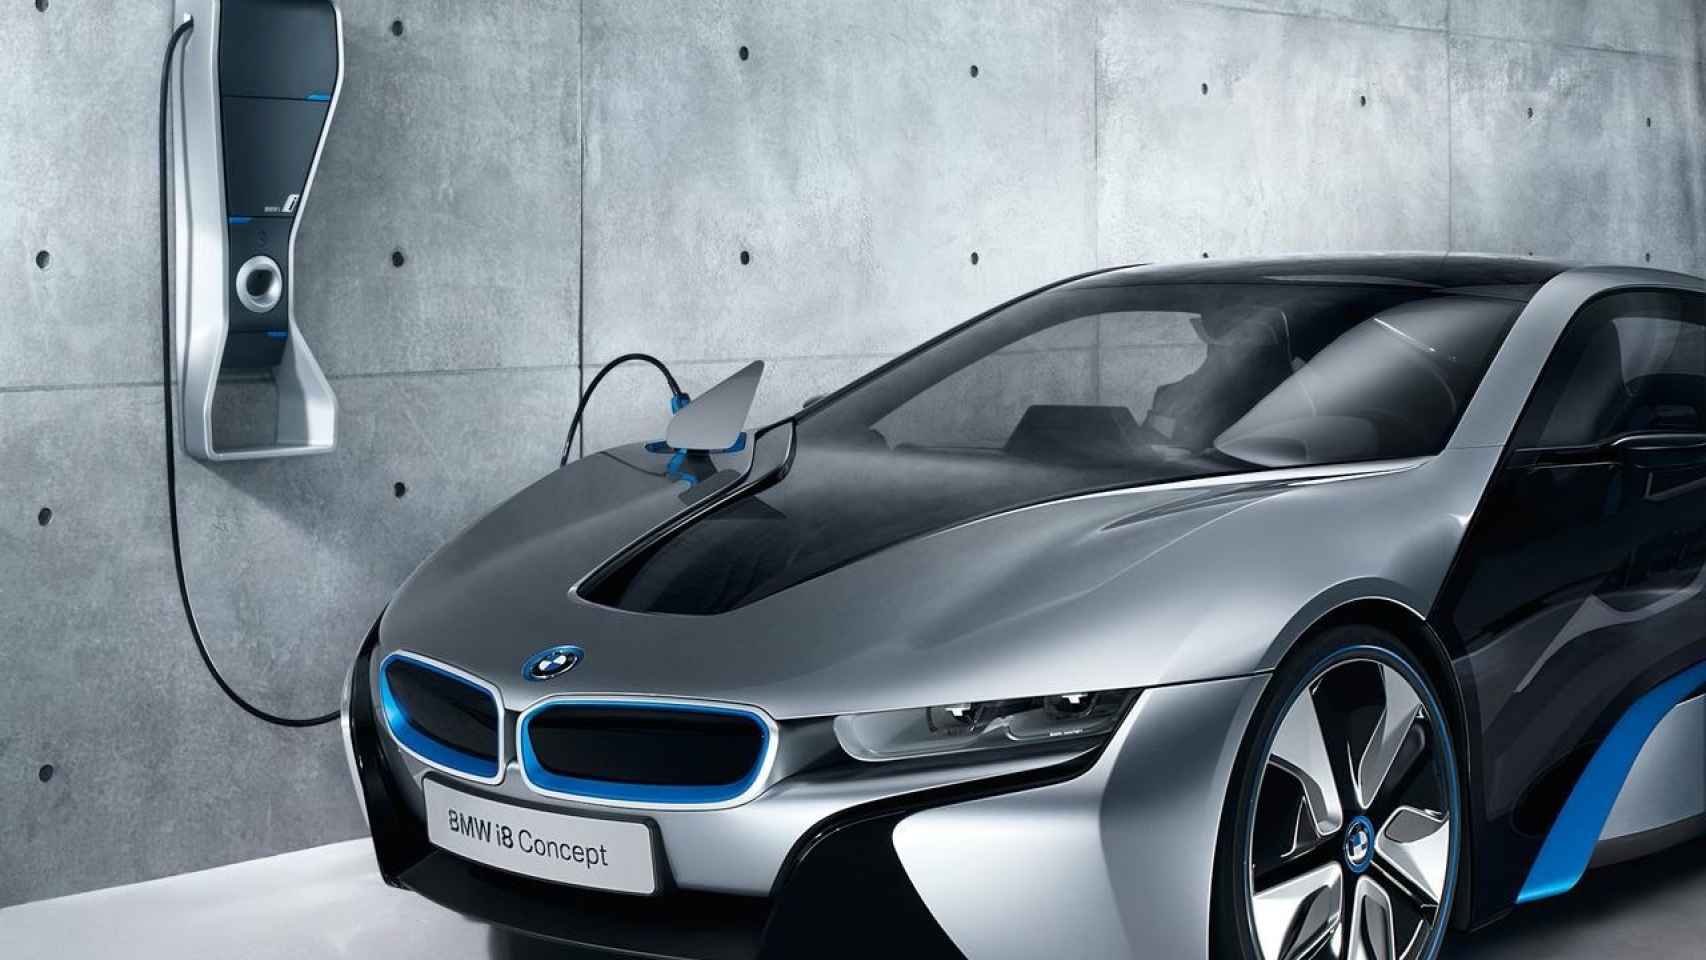 El 40% de las emisiones de CO2 de un coche eléctrico proviene de la producción de la batería, según BMW